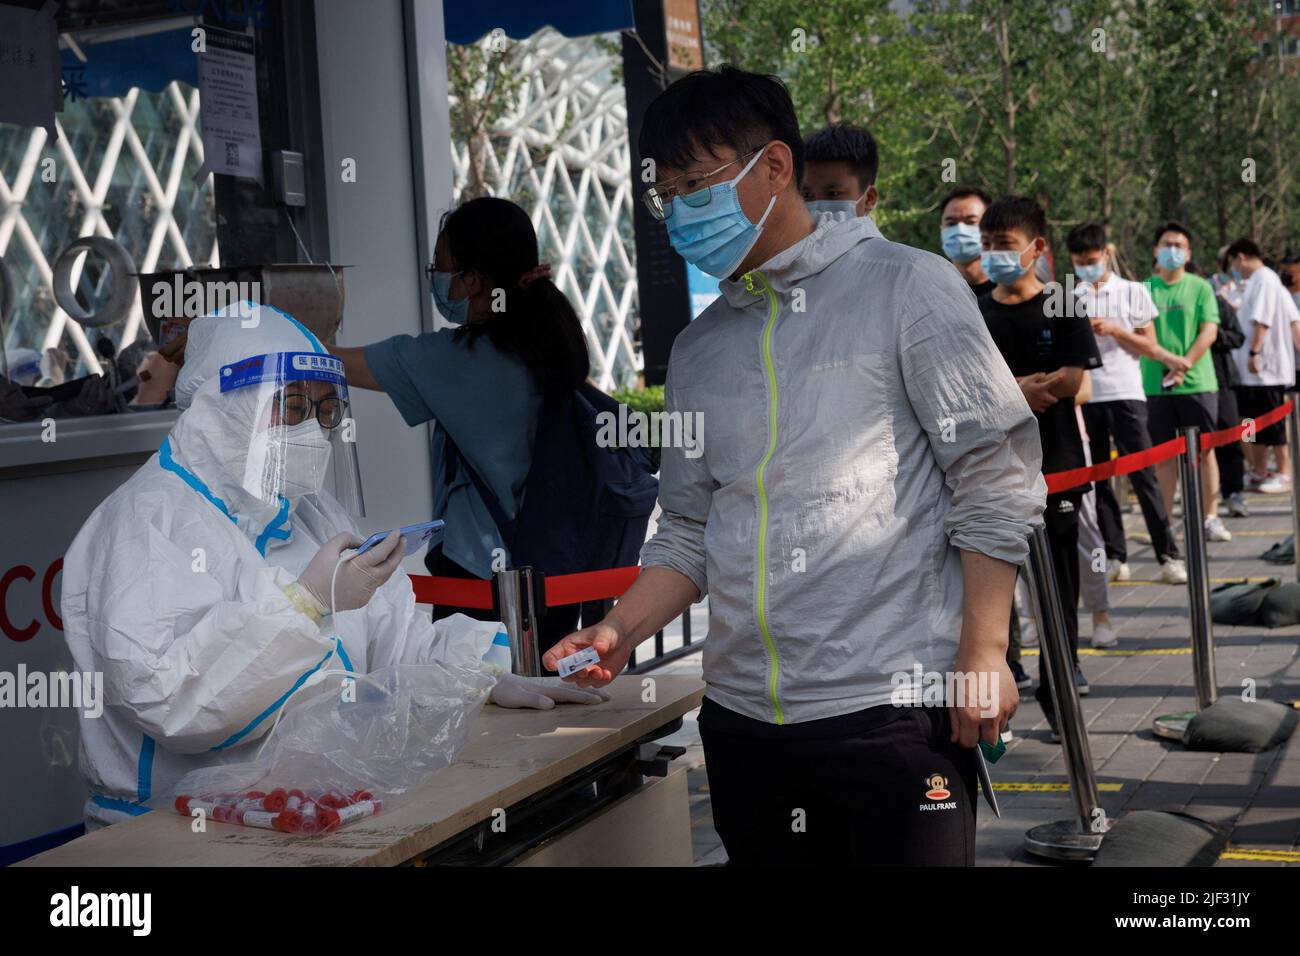 Un travailleur en costume protecteur scanne la carte d'identification d'un homme dans un poste de test d'acide nucléique, à la suite d'une épidémie de coronavirus (COVID-19), à Beijing, en Chine, au 29 juin 2022. REUTERS/Thomas Peter Banque D'Images